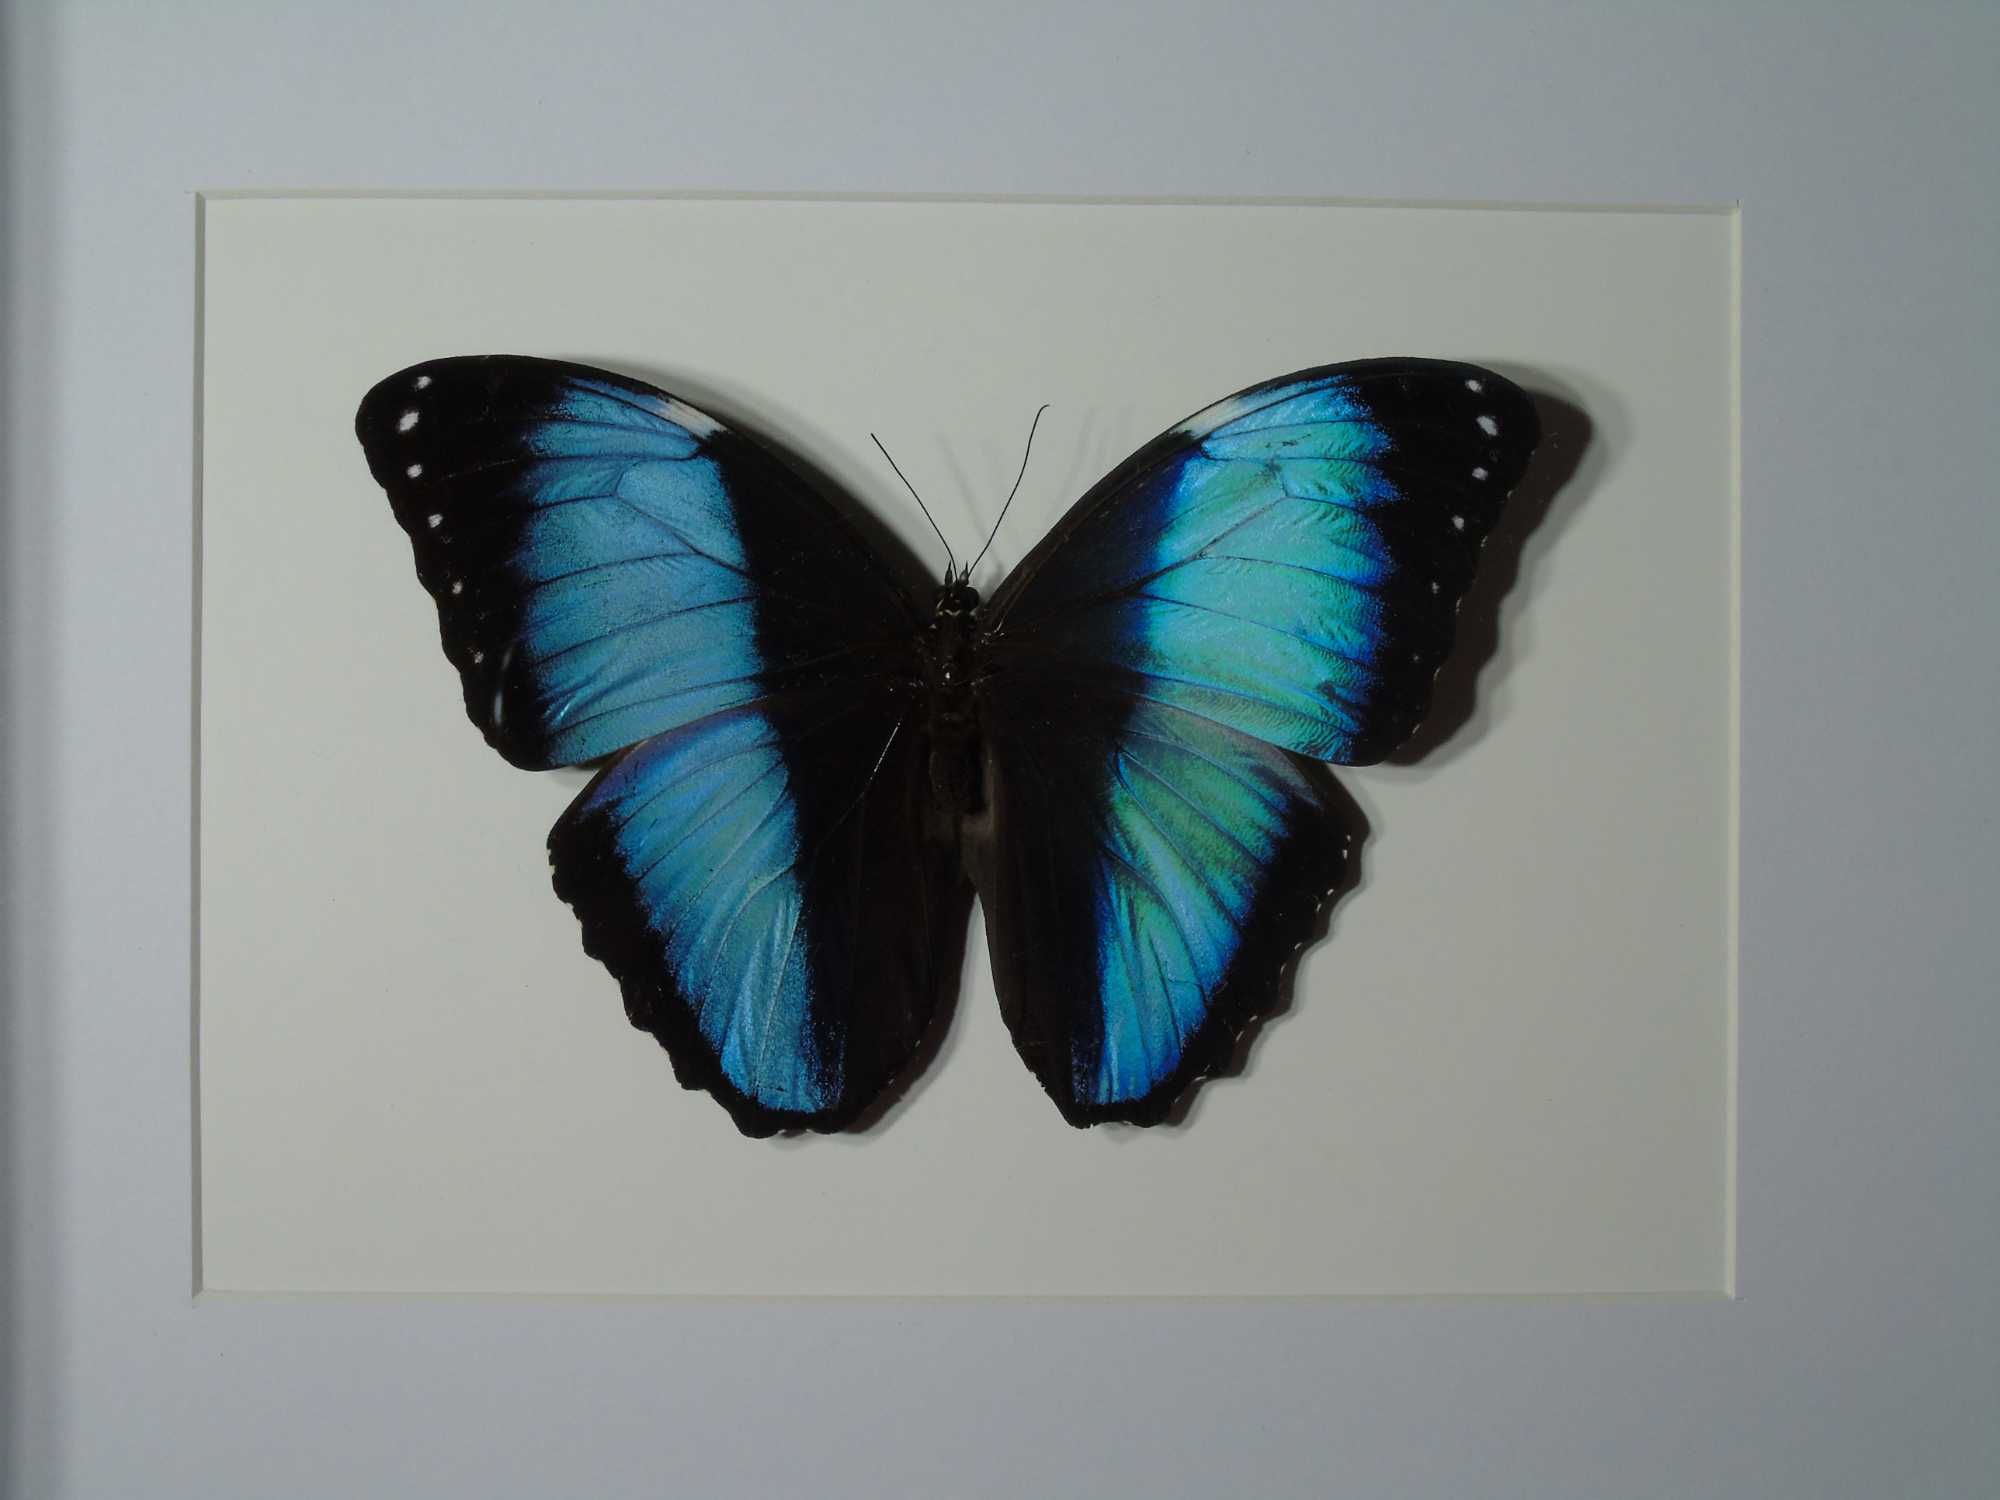 Motyl w ramce / gablotce 27 x 22 cm . Morpho achilles / helenor 130 mm